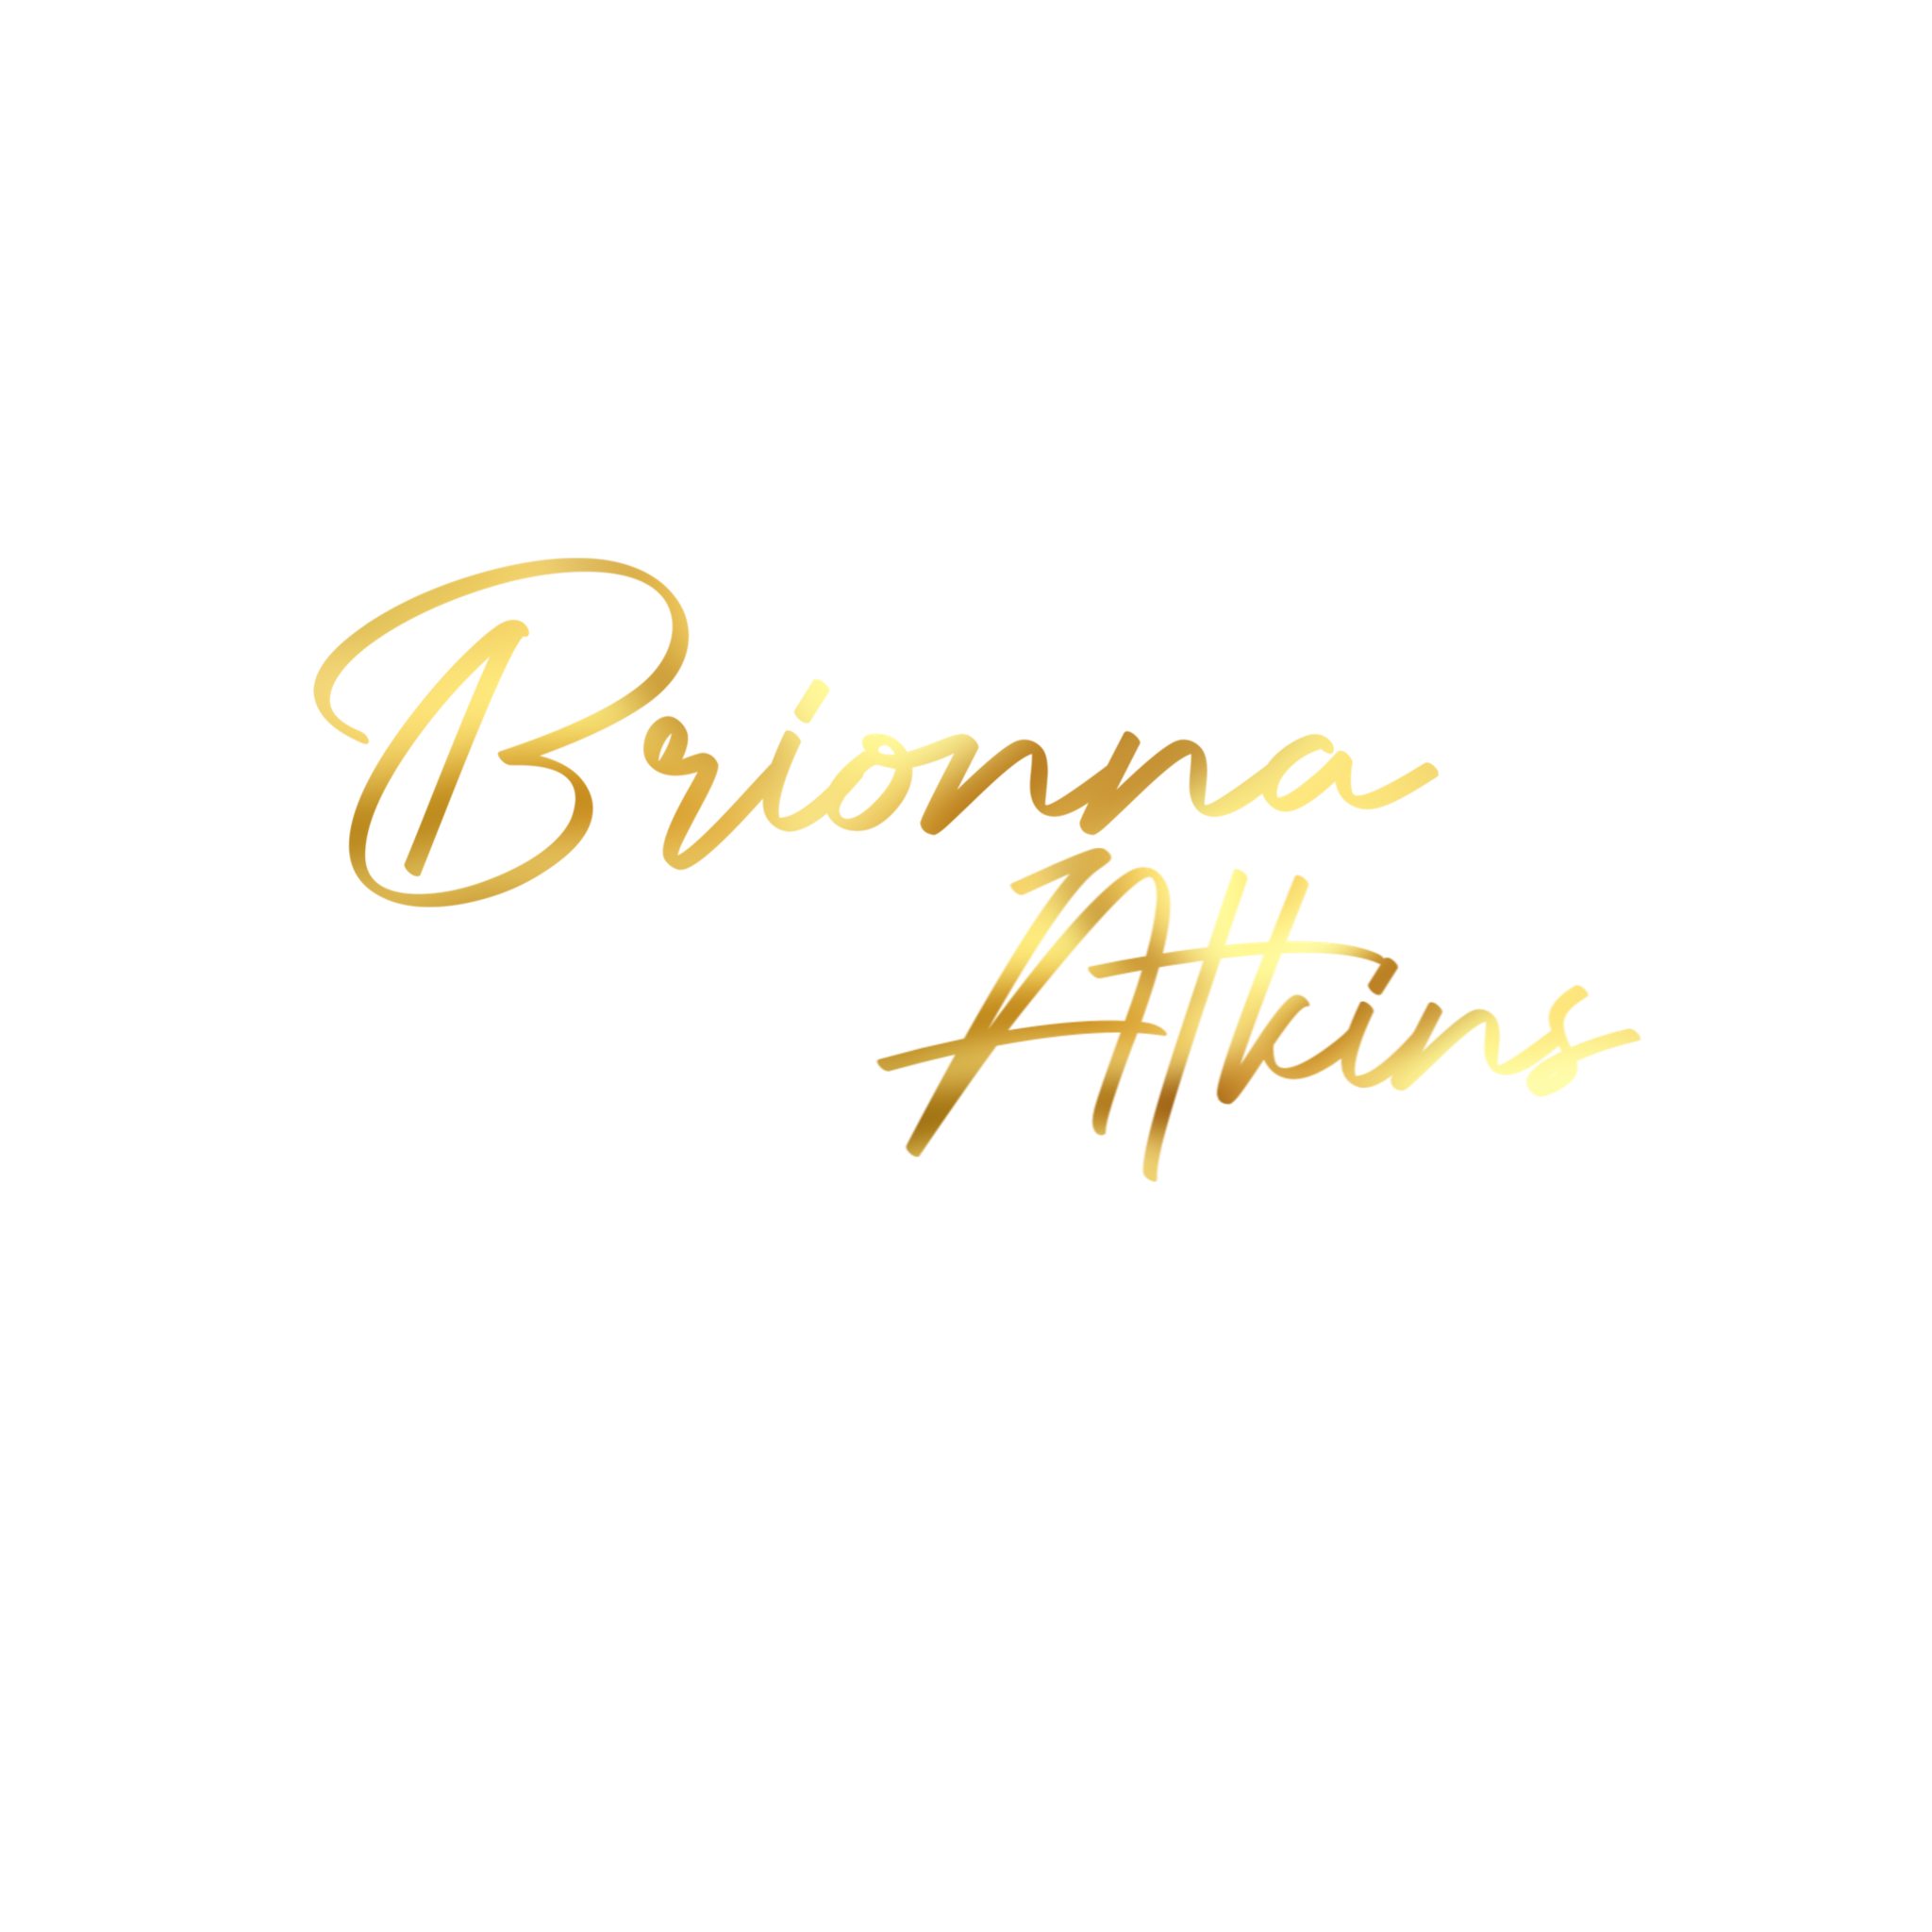 Brionna Atkins Logo